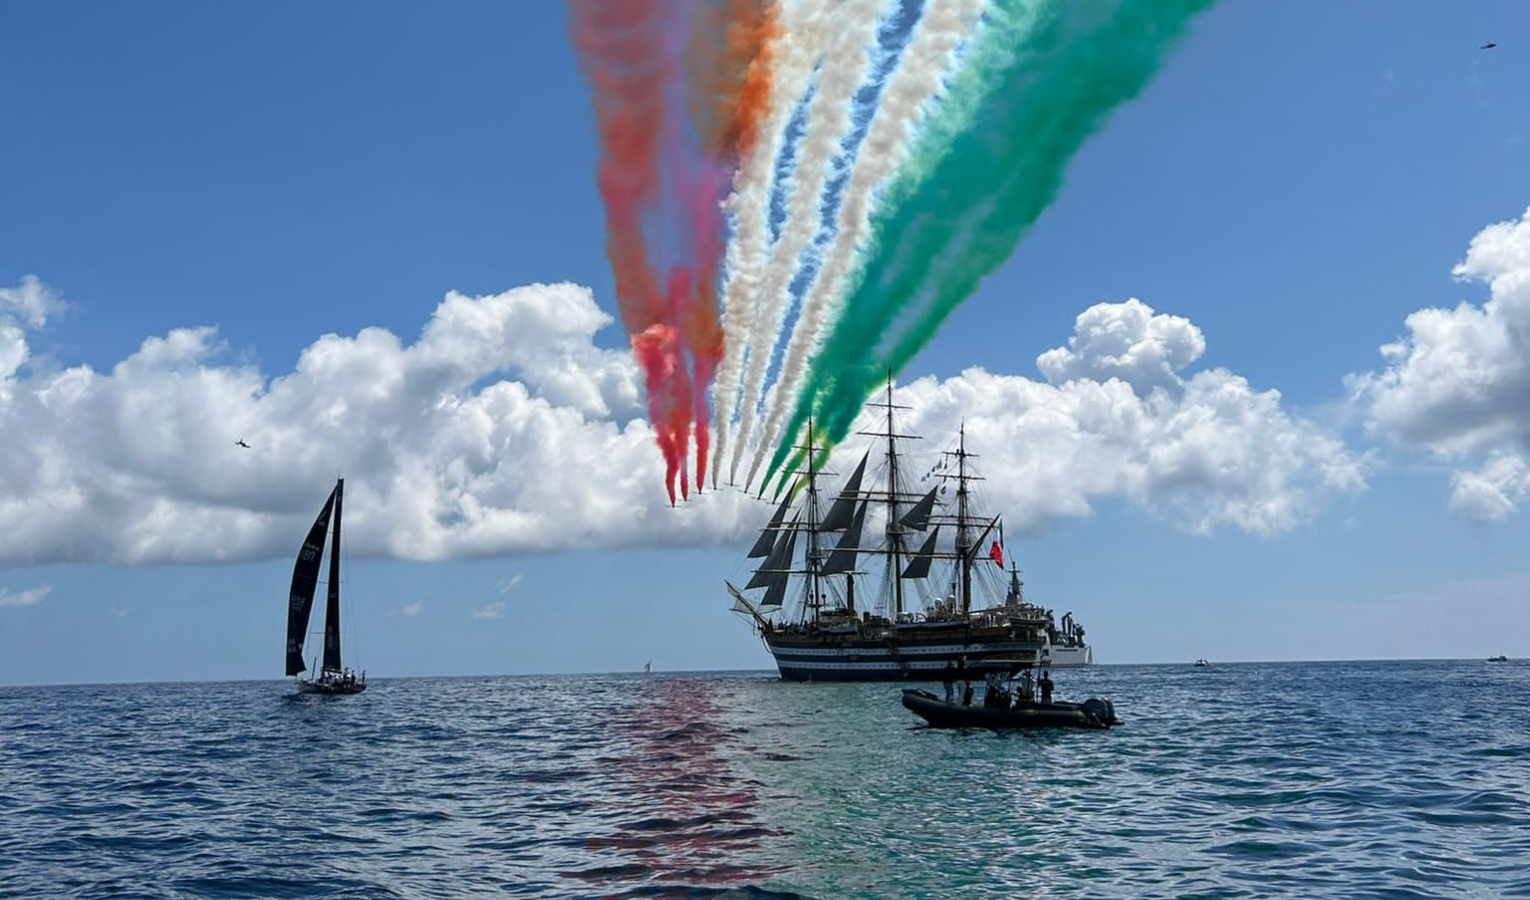 Le Frecce Tricolori sorvolano la Vespucci - le spettacolari immagini di Primocanale